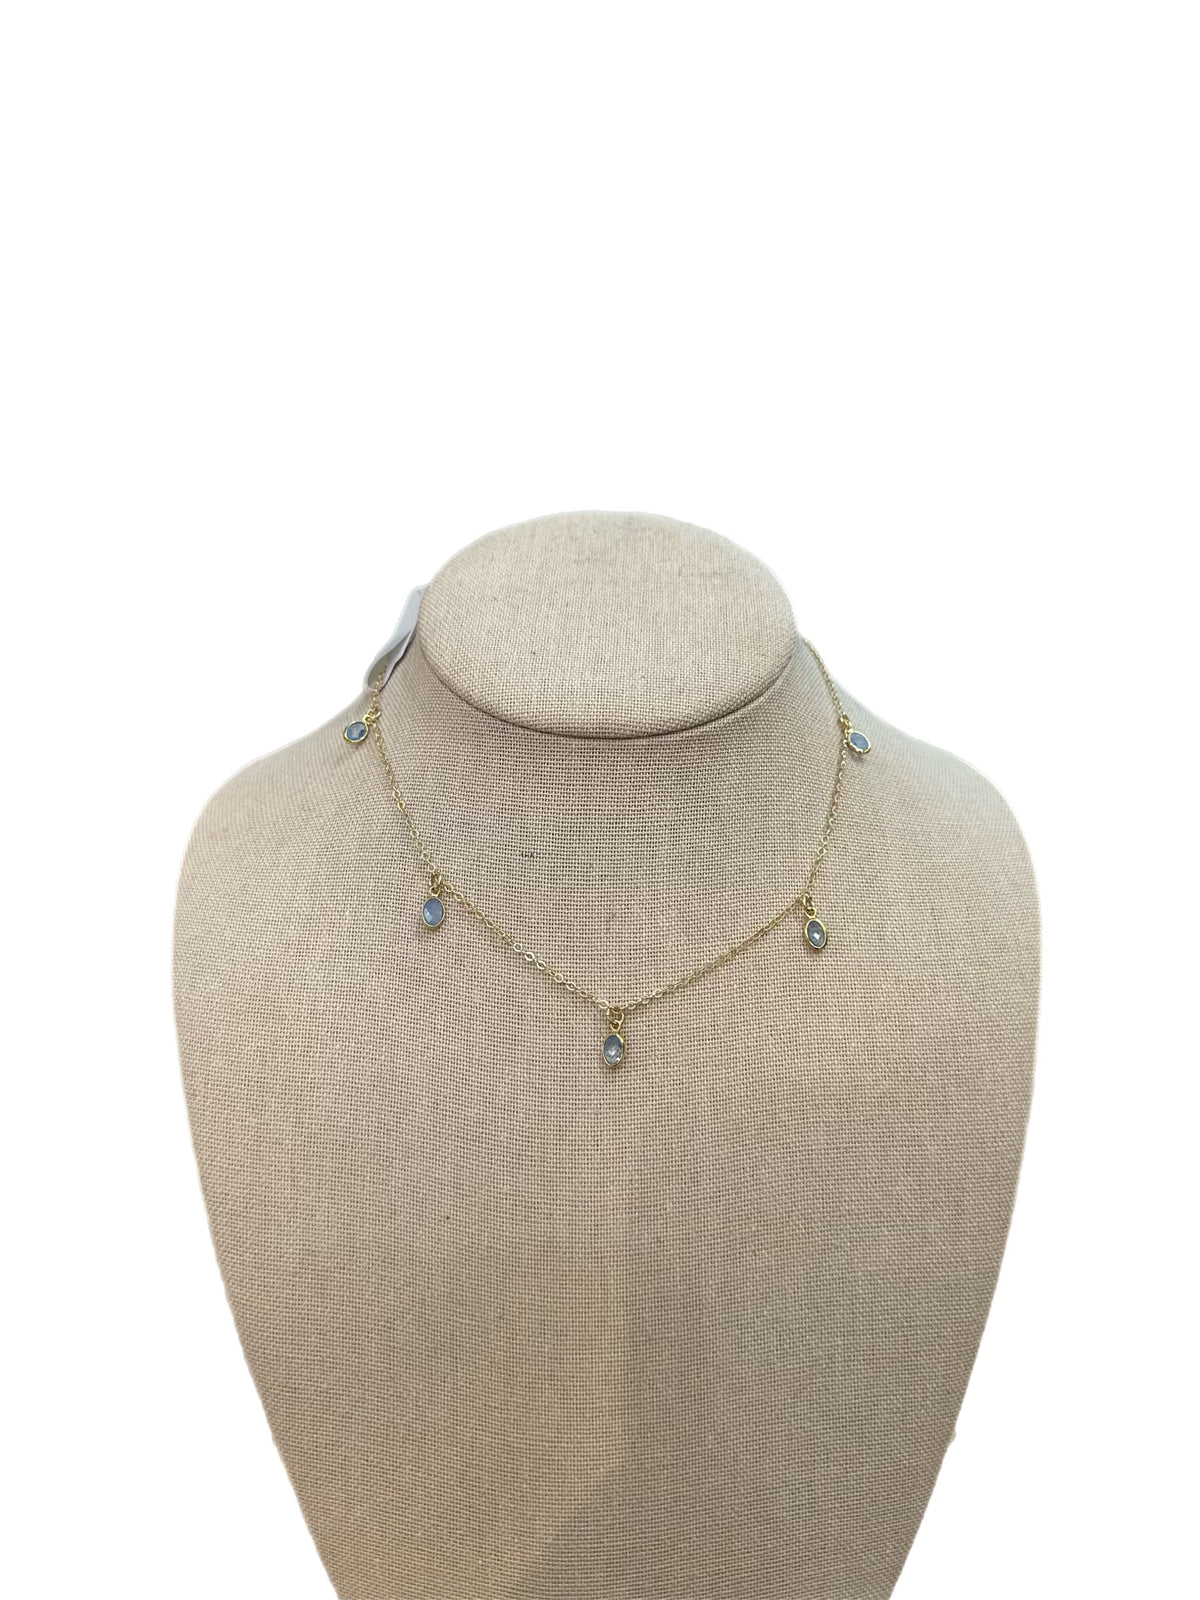 Teardrop Necklace by Charzie Jewelry